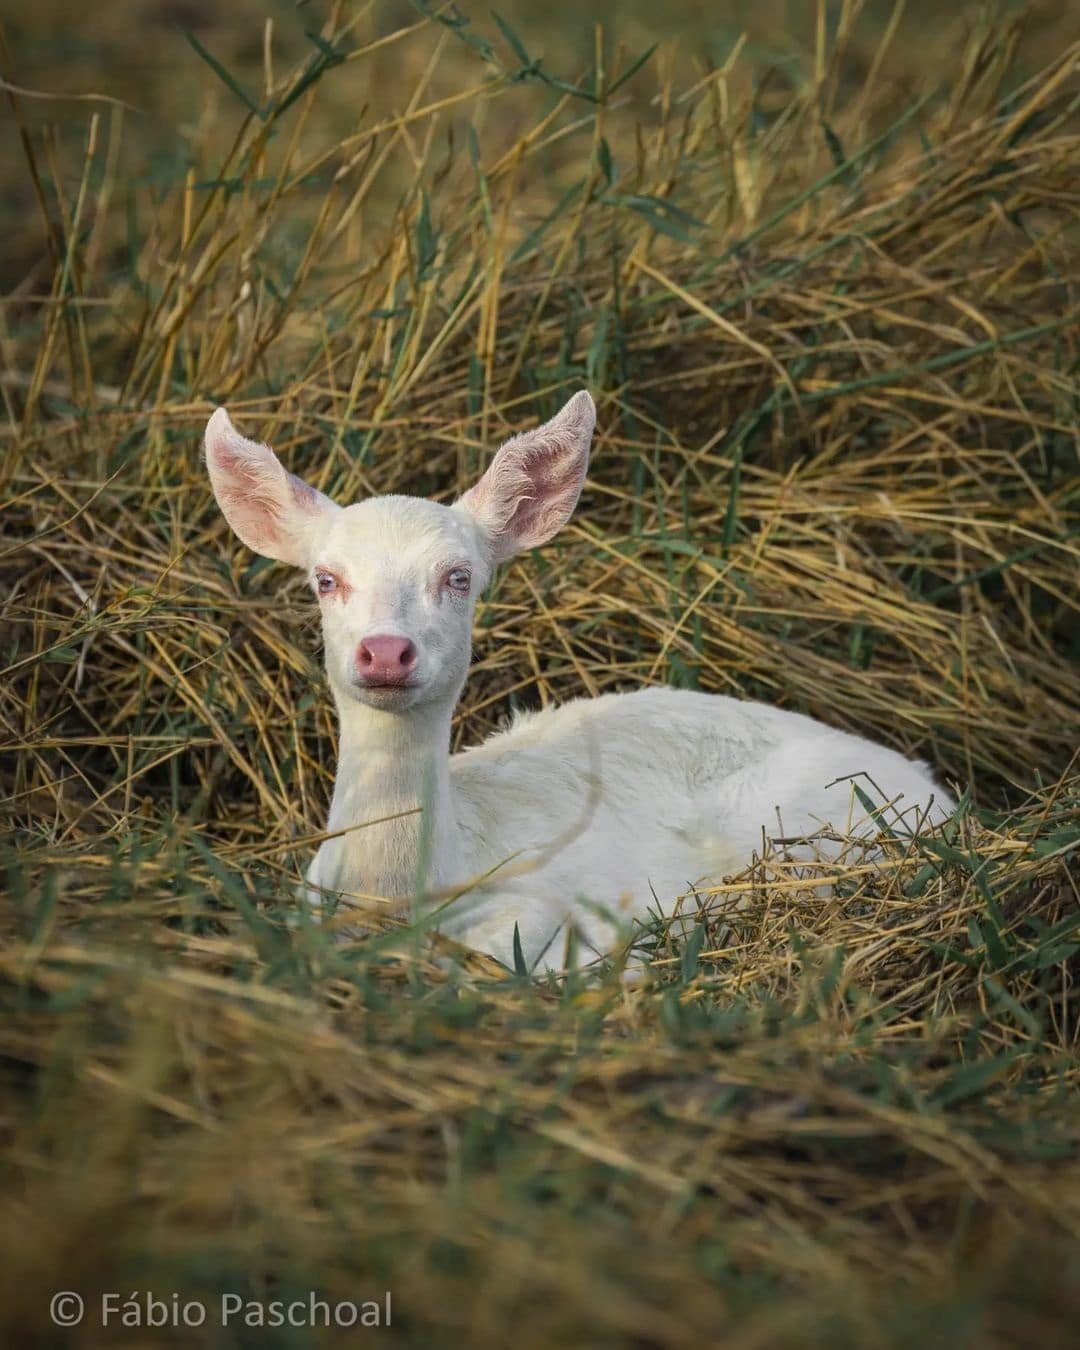 Fotógrafo faz registro raro de veado albino no Pantanal Mato-grossense